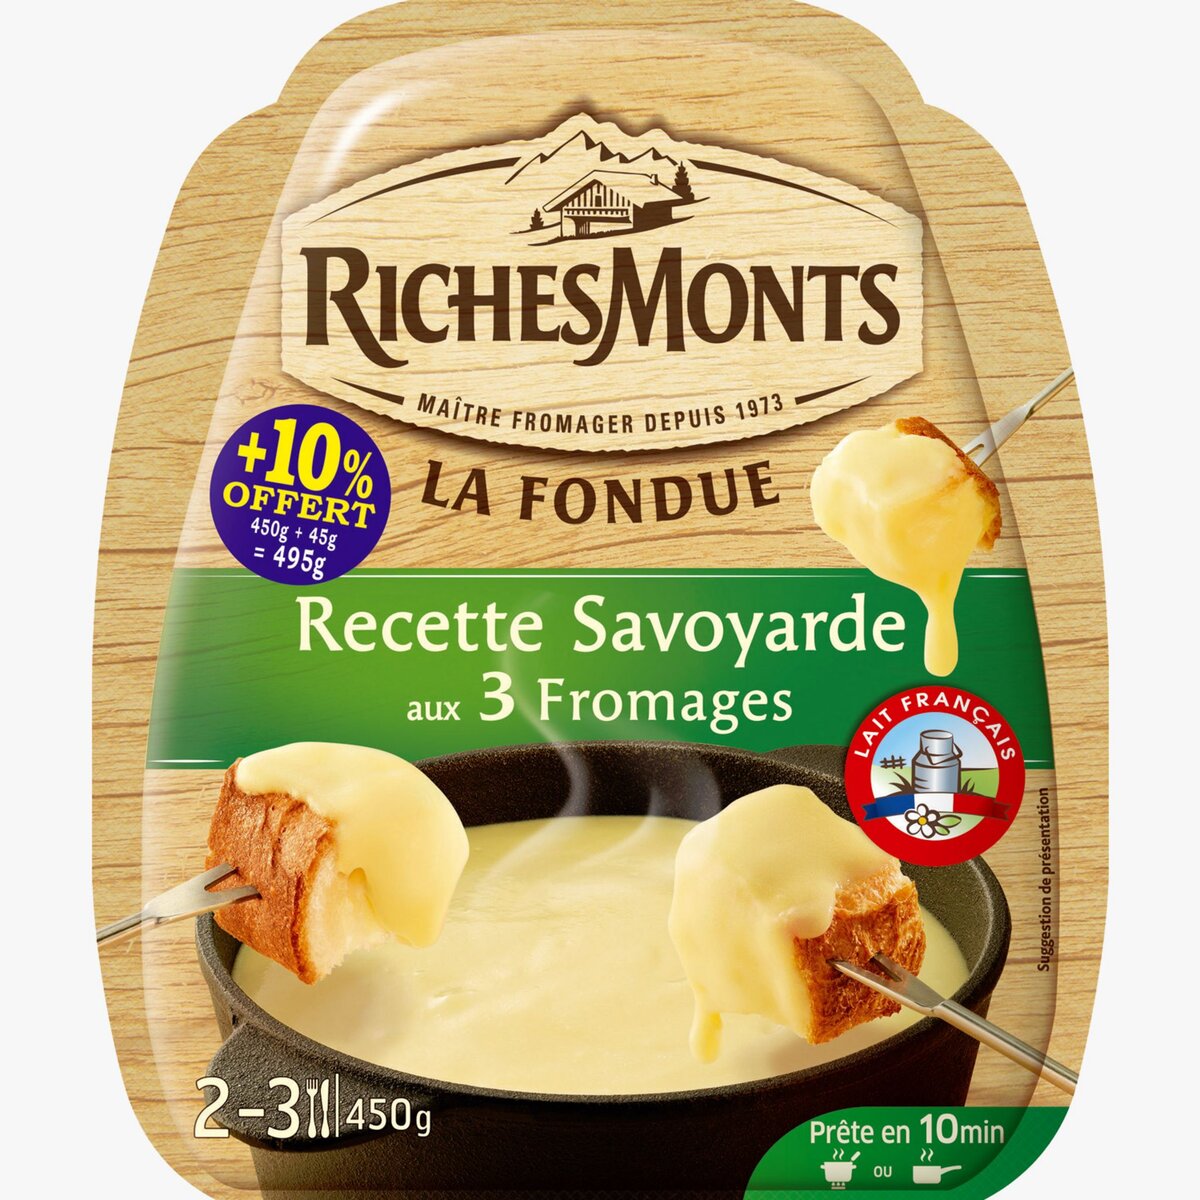 RICHESMONTS Richesmonts fromage à fondue savoyarde 450g +10% offert